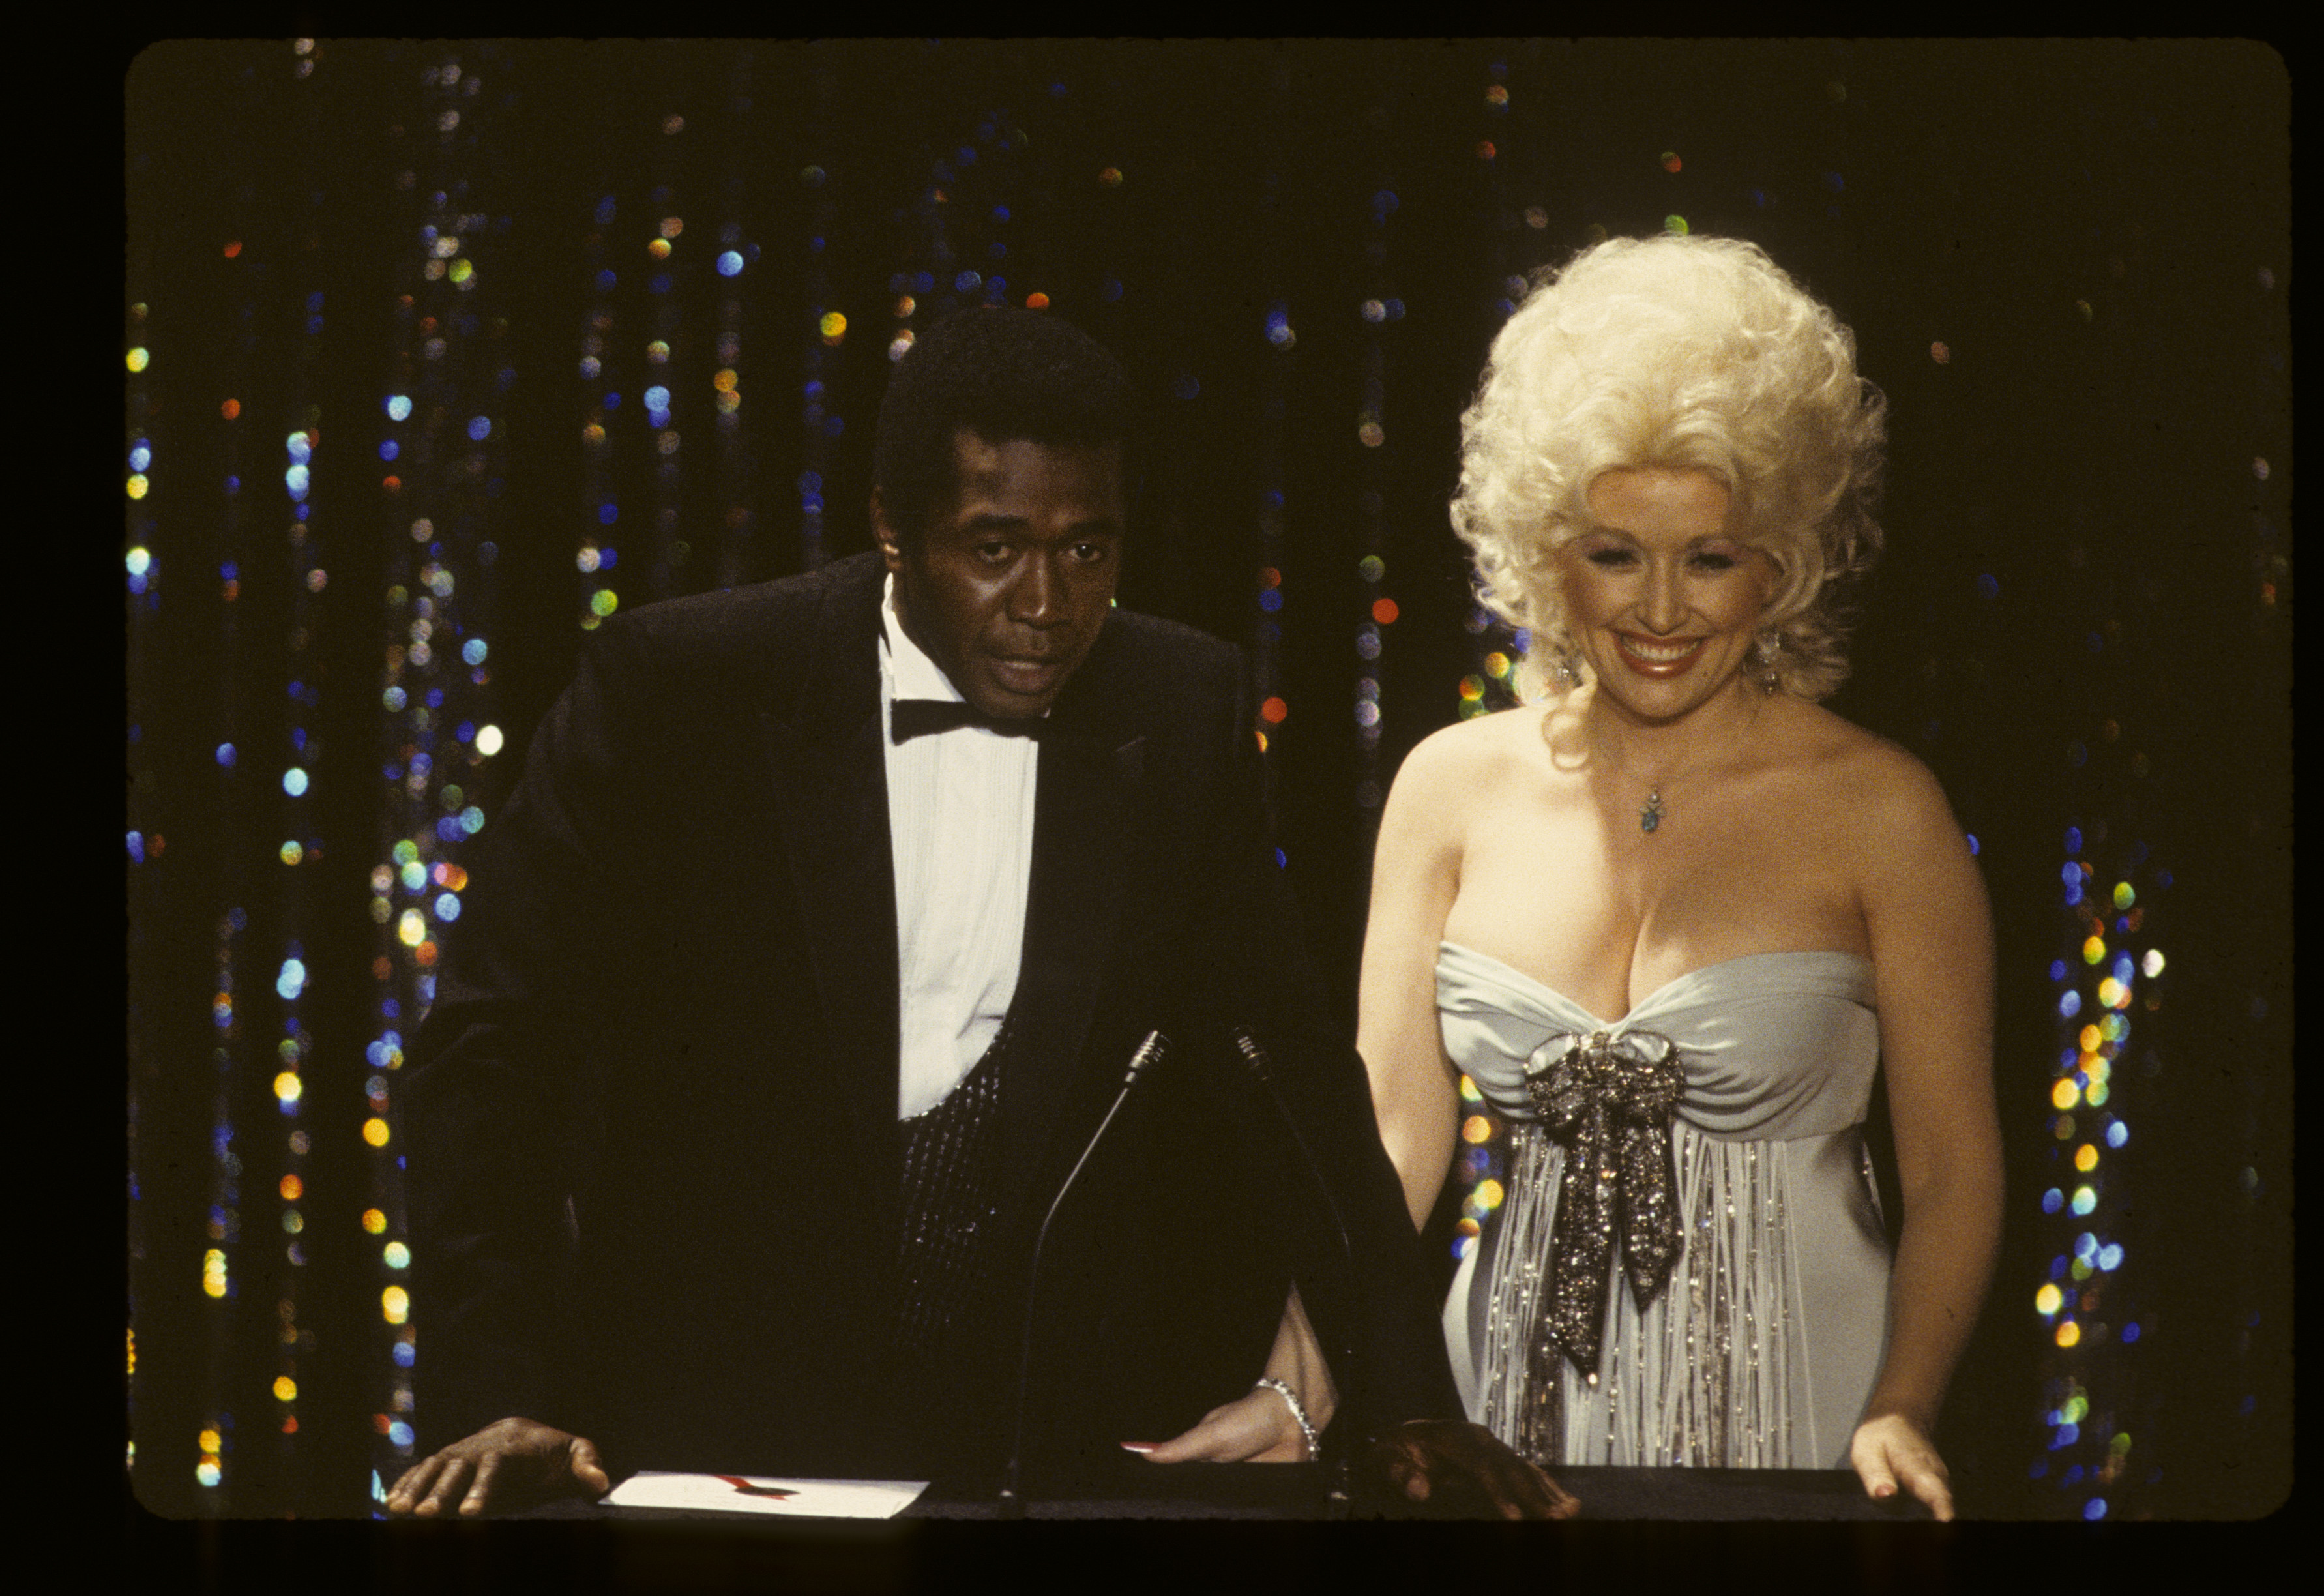 Ben Vereen and Dolly Parton present at the 1980 Academy Awards